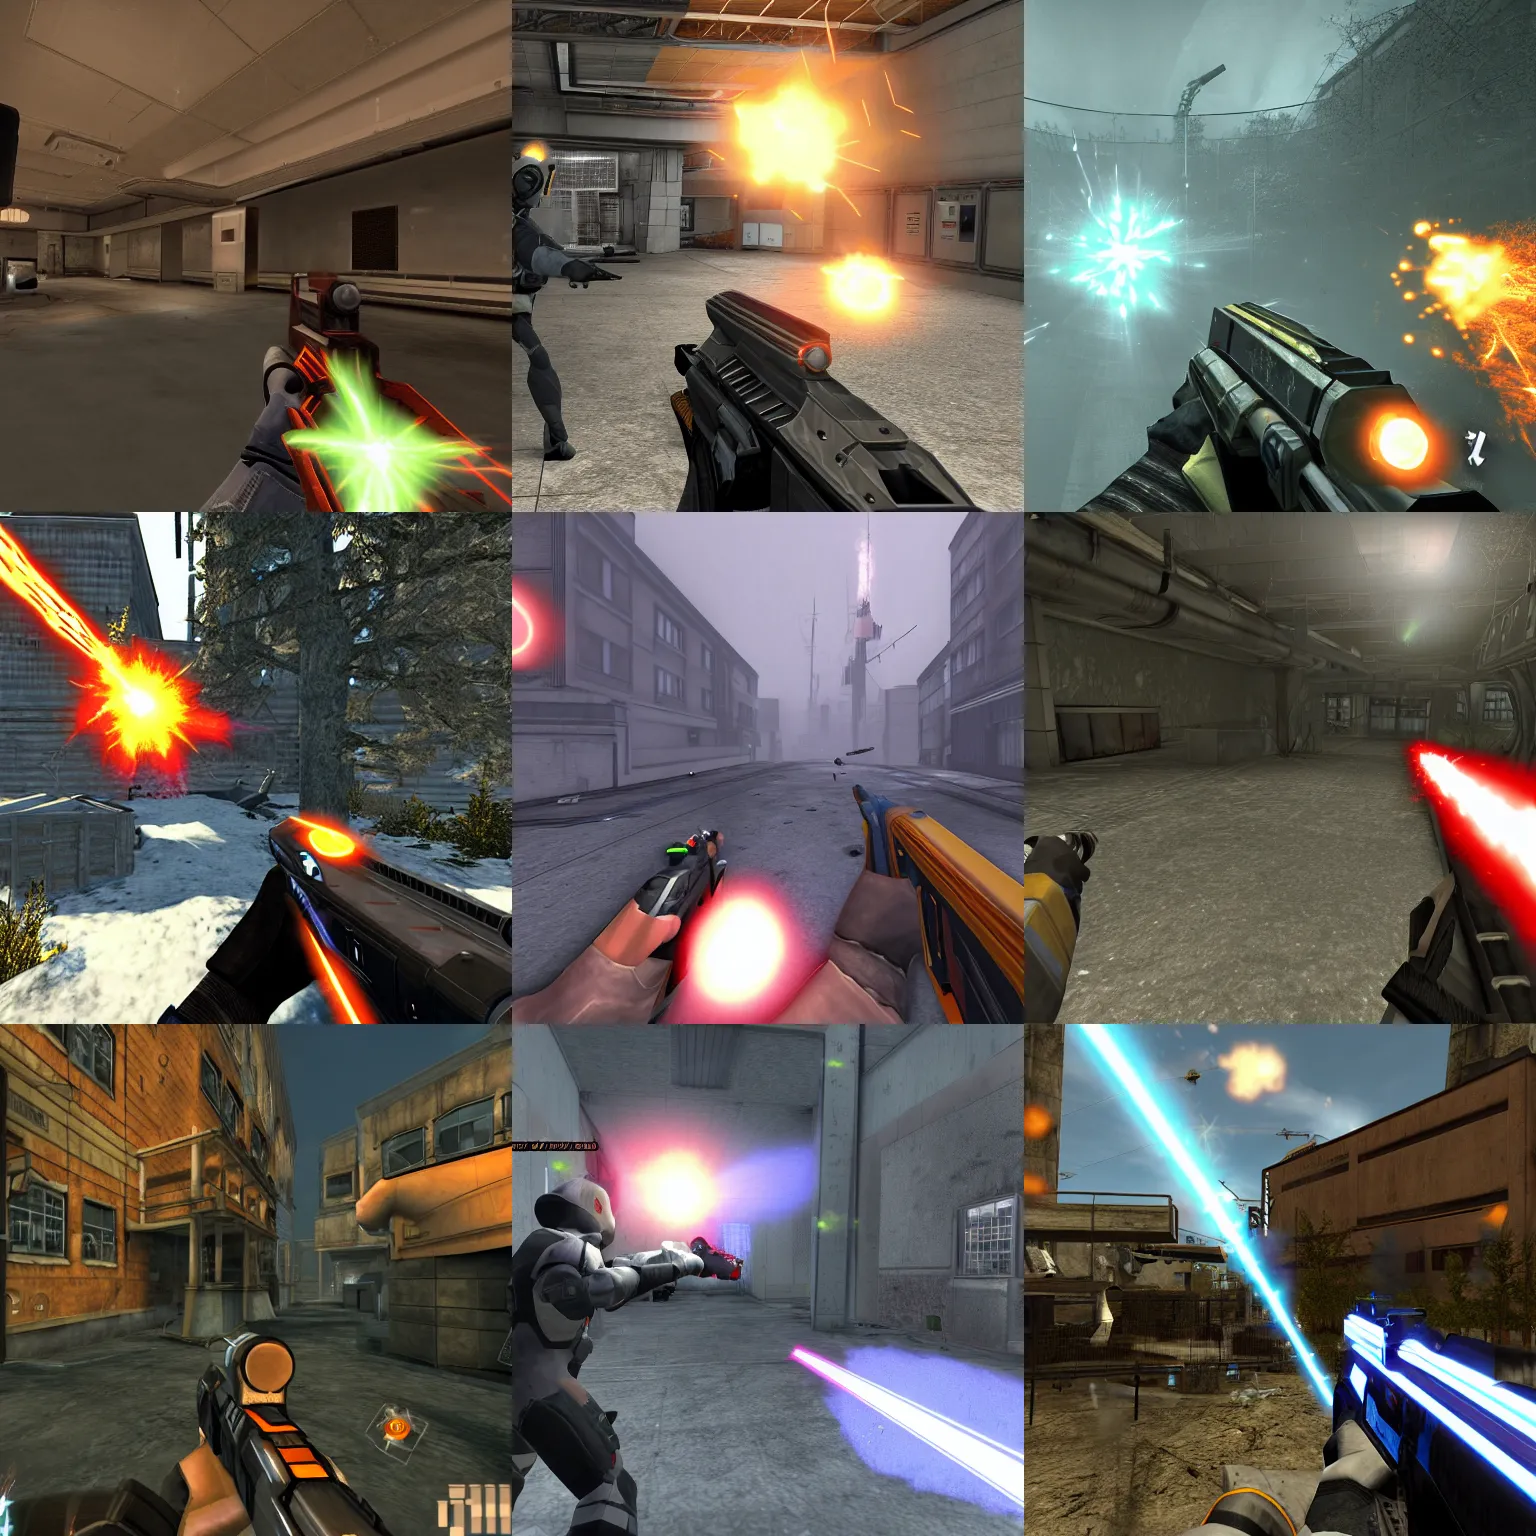 Prompt: screenshot of half - life 3, laser gun